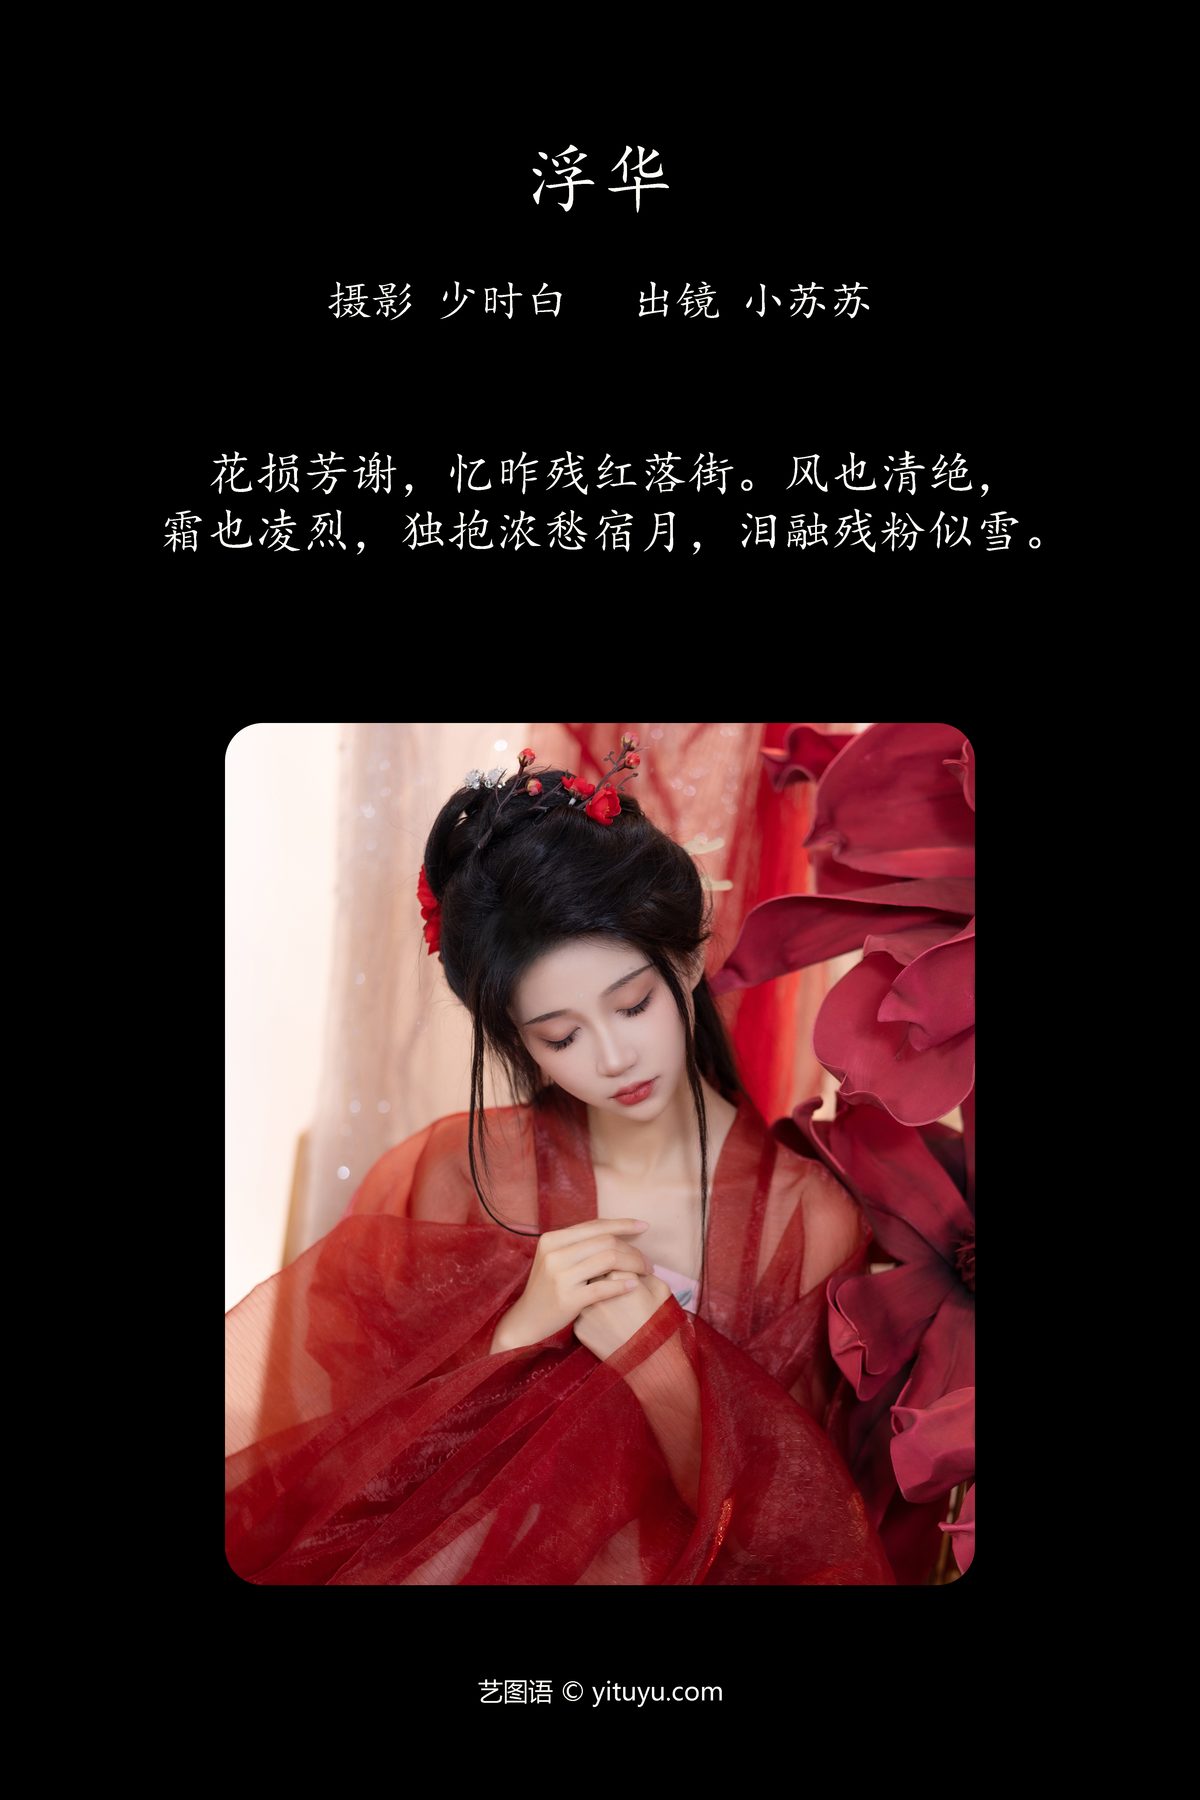 YiTuYu艺图语 Vol 4183 Qi Luo Sheng De Xiao Su Su 0002 0048829015.jpg